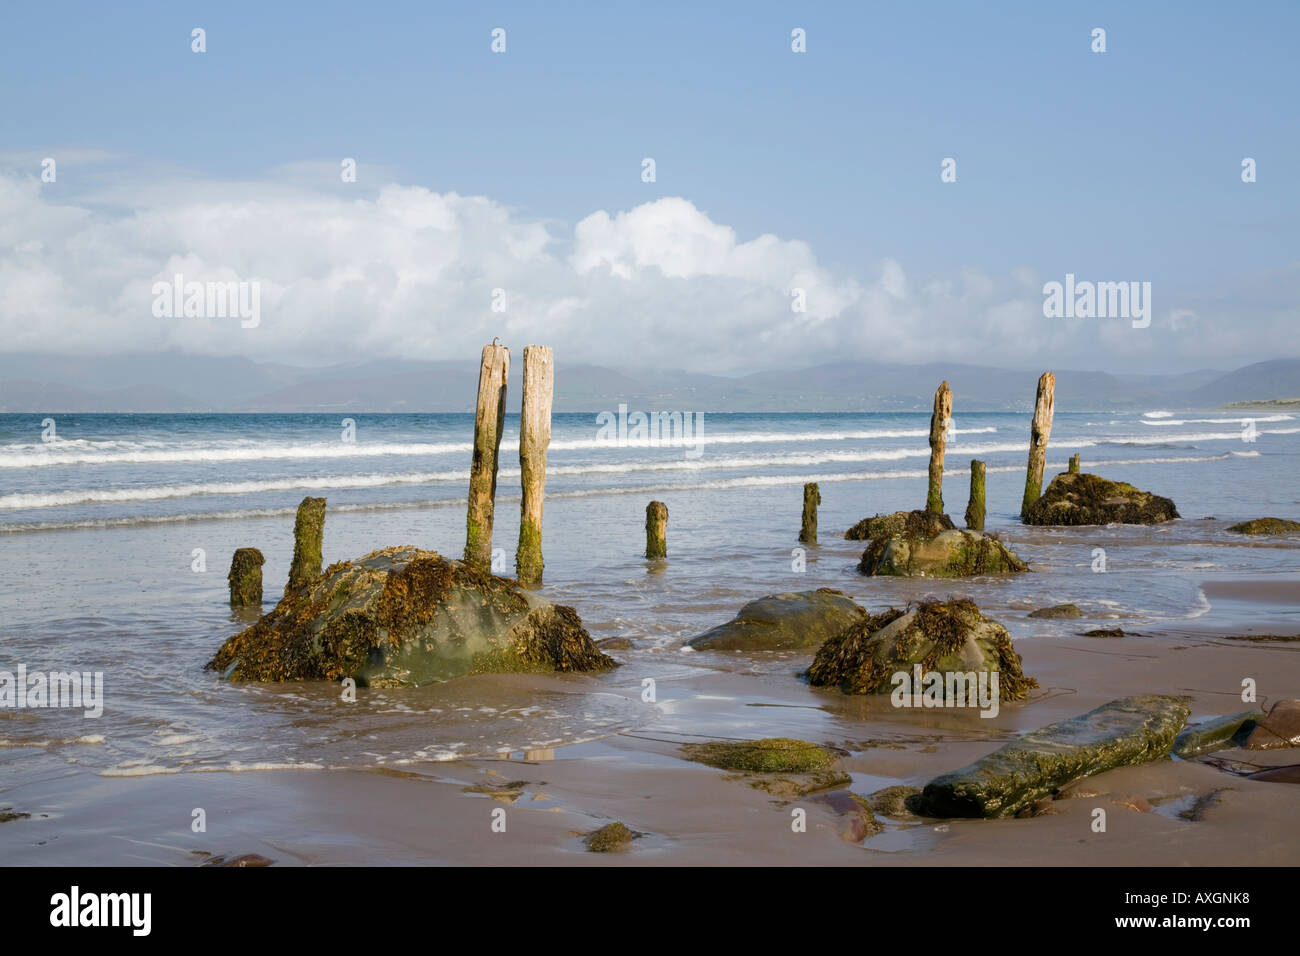 Hölzernen Pfosten und Steinen auf nassen Sand am leeren Strand von Ross Strand auf dem Ring of Kerry. Rossbeigh County Kerry Eire-Irland Stockfoto